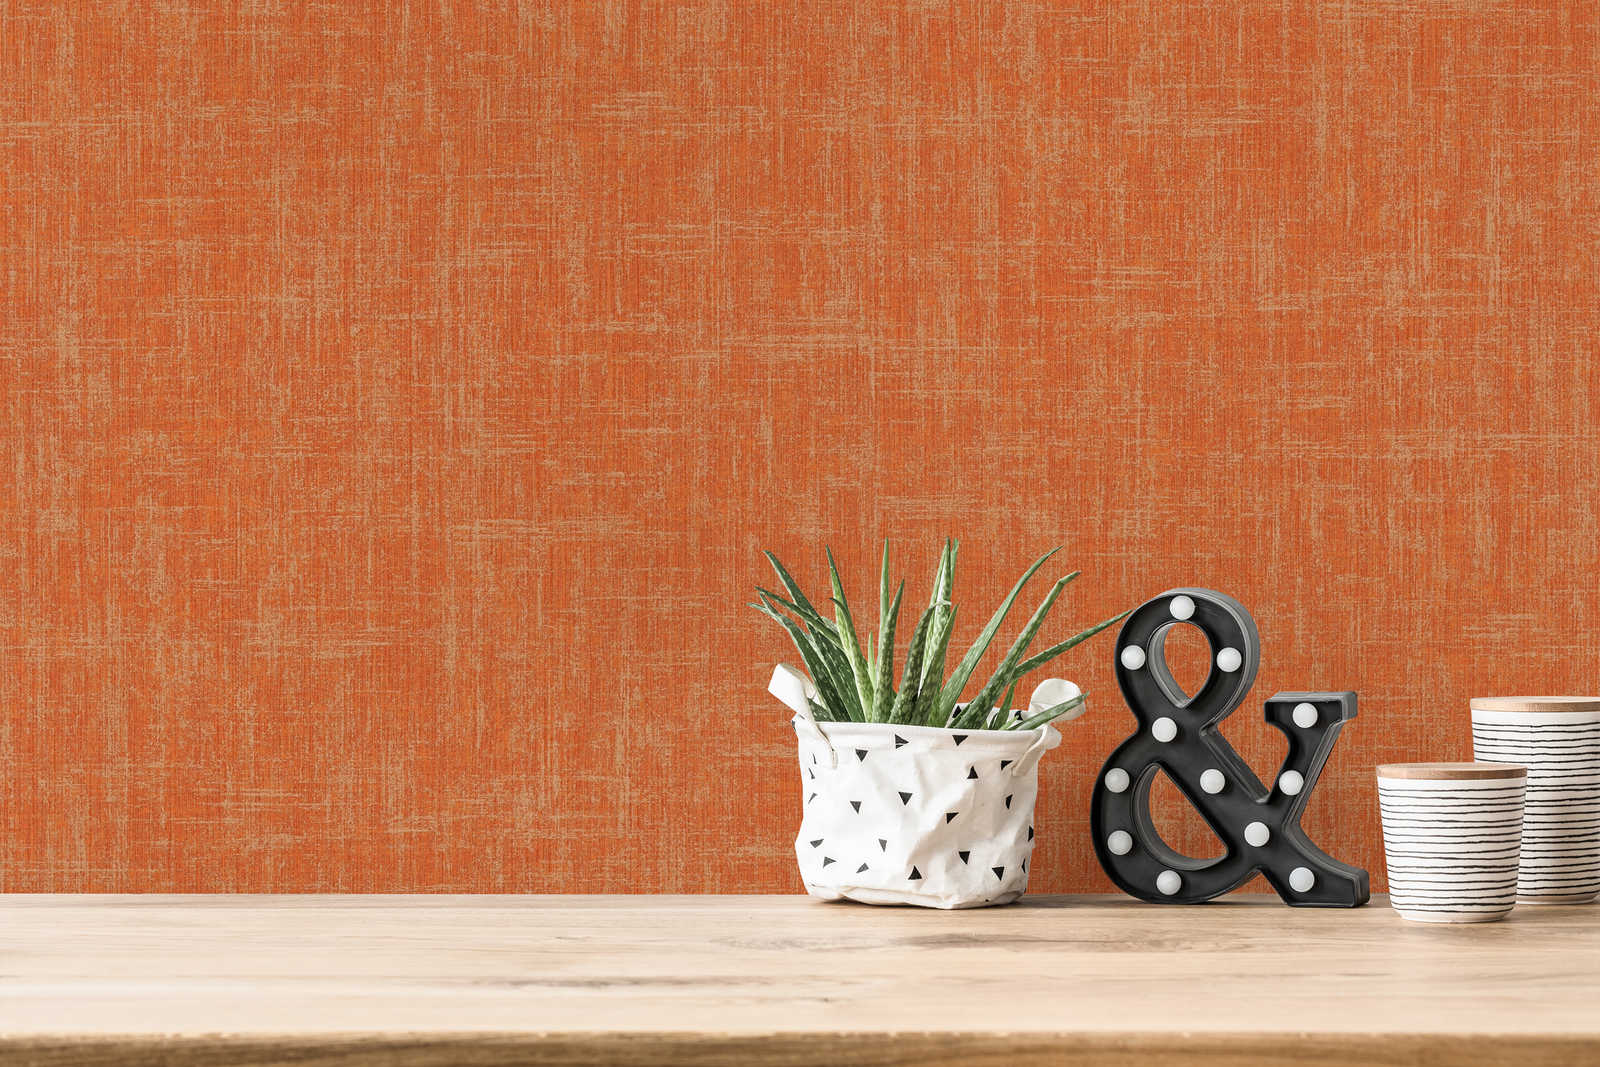             Orange wallpaper with linen texture design
        